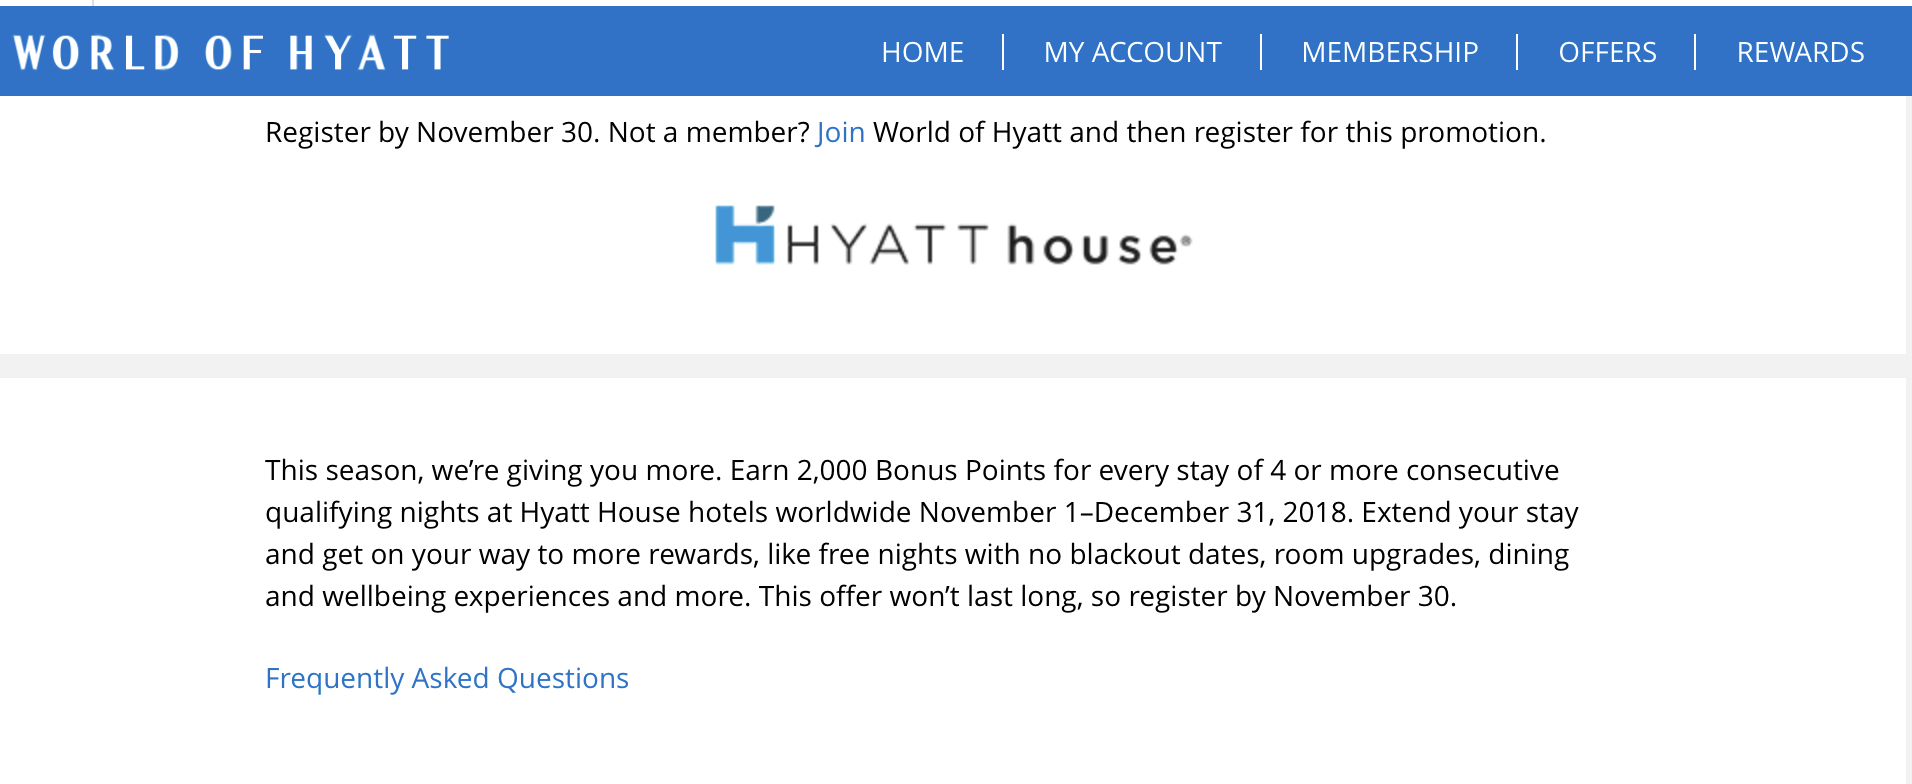 Hyatt House Bonus Points Promotion